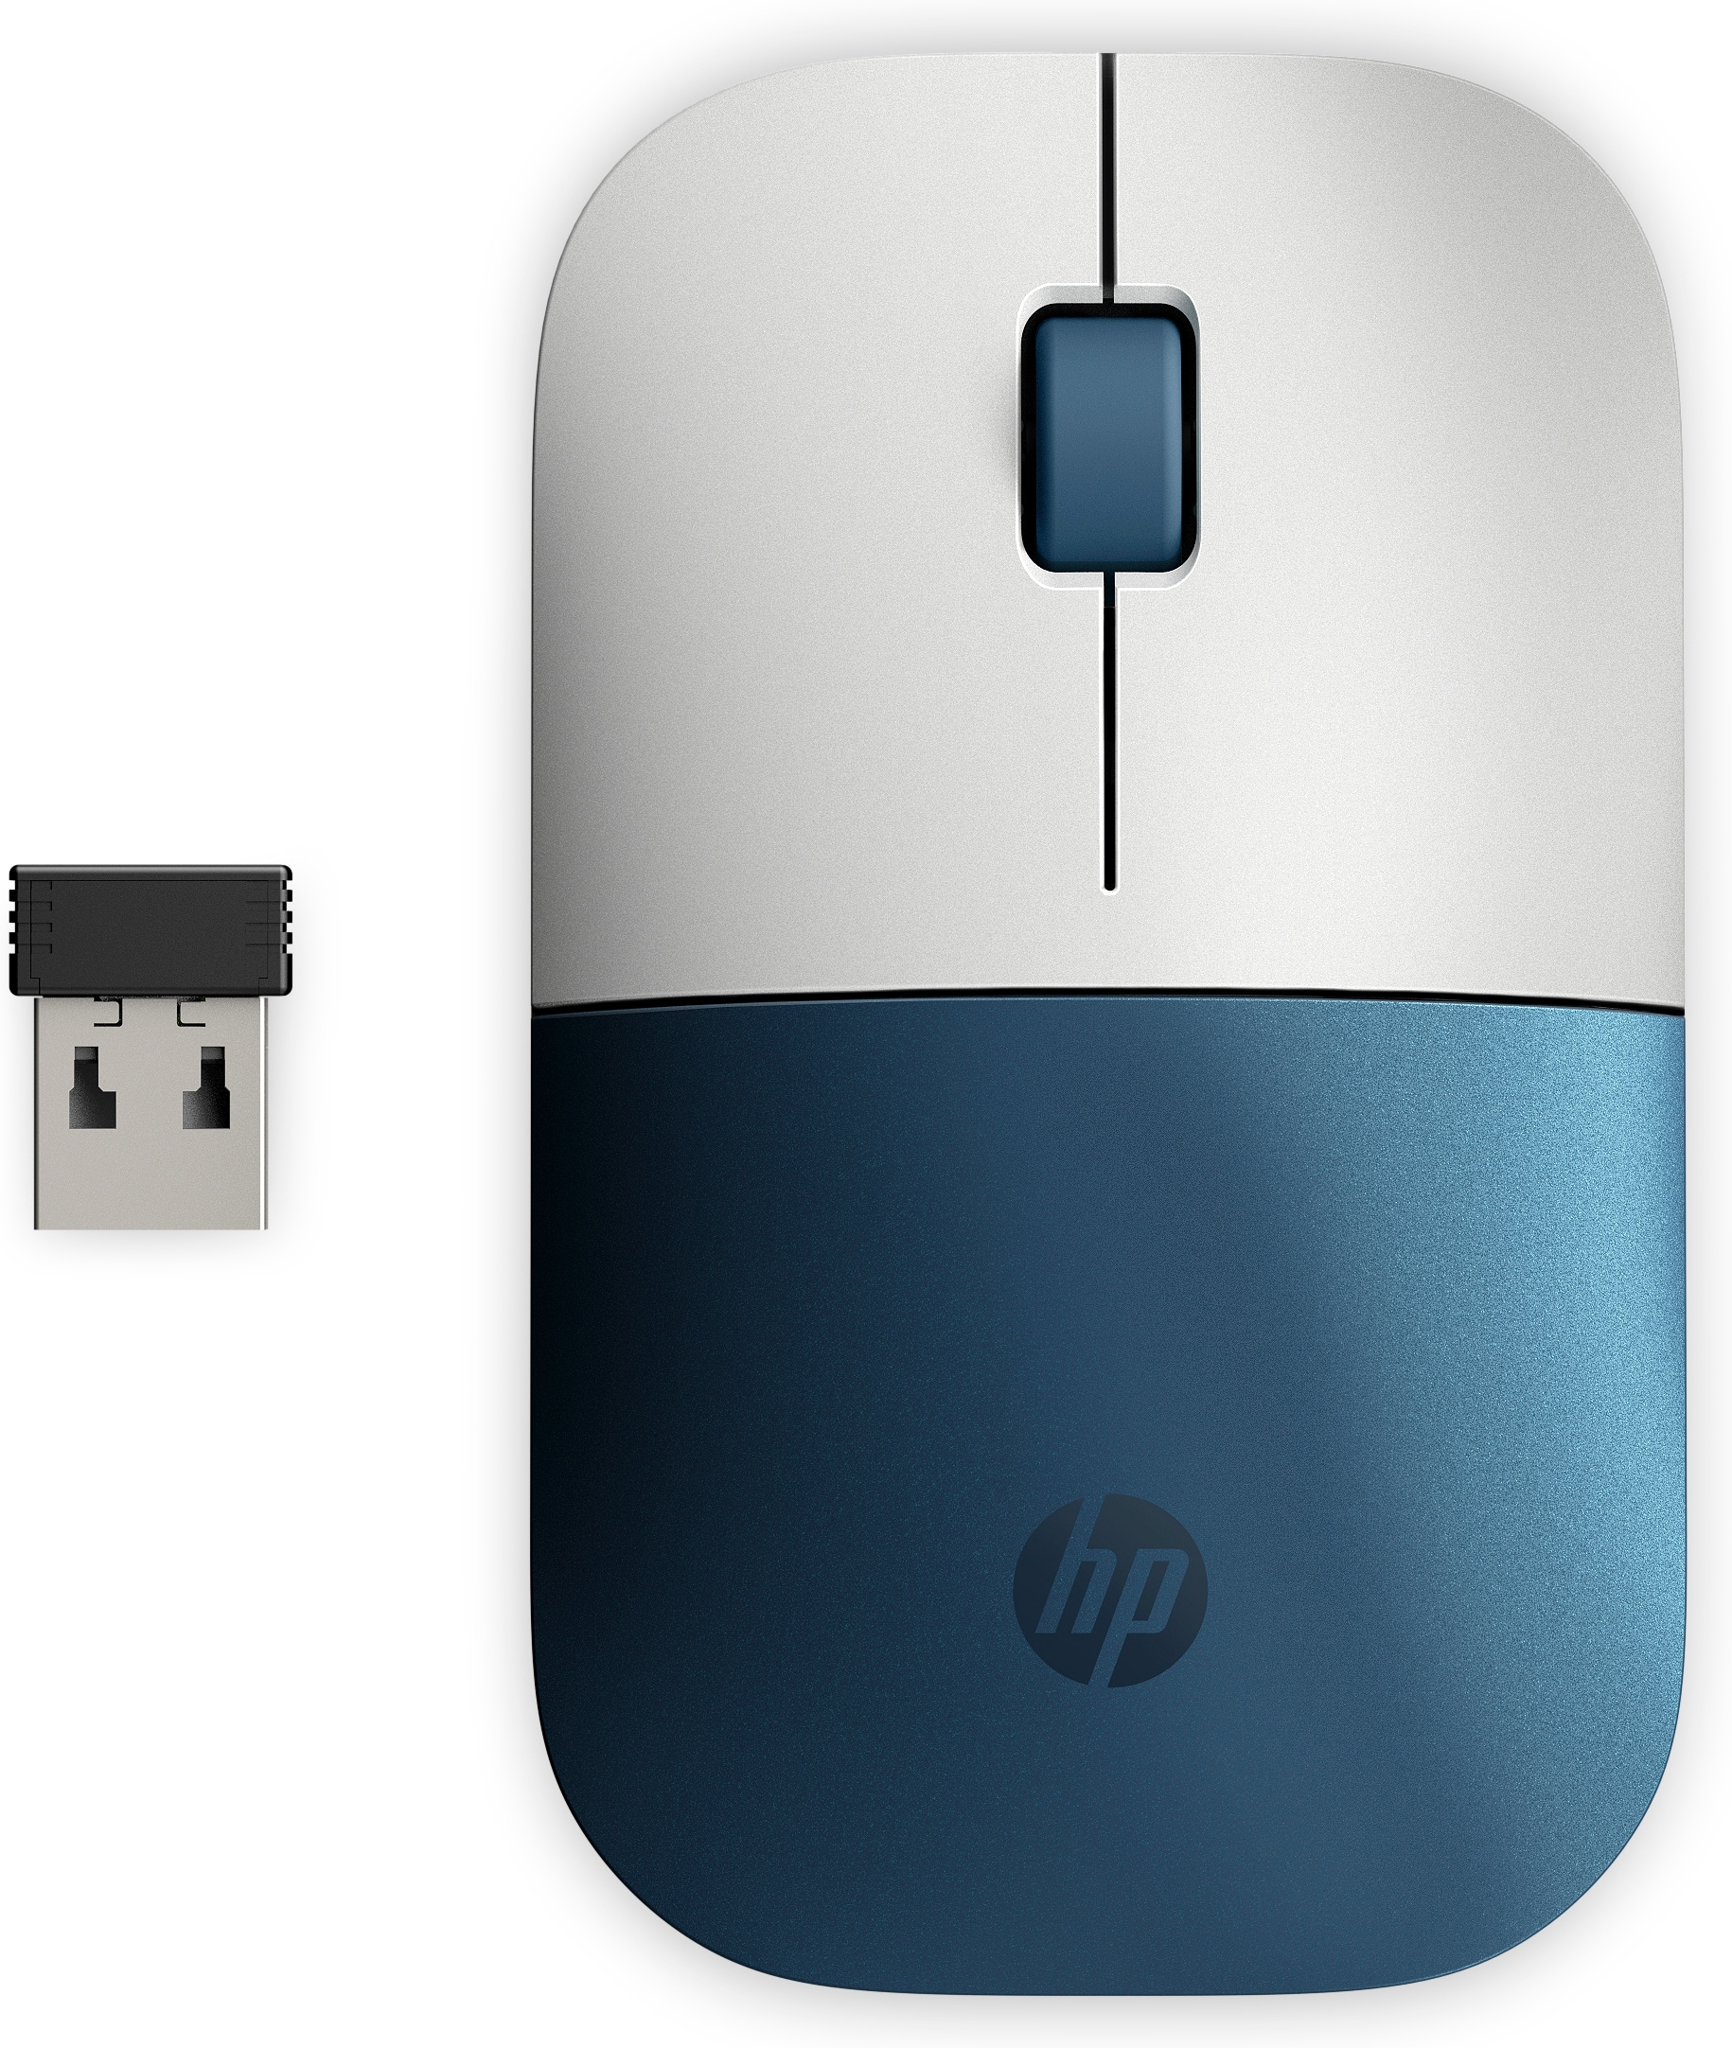 Bild von HP Z3700 Wireless-Maus (Forest Teal), Optisch, RF Wireless, 1200 DPI, Türkis, Weiß